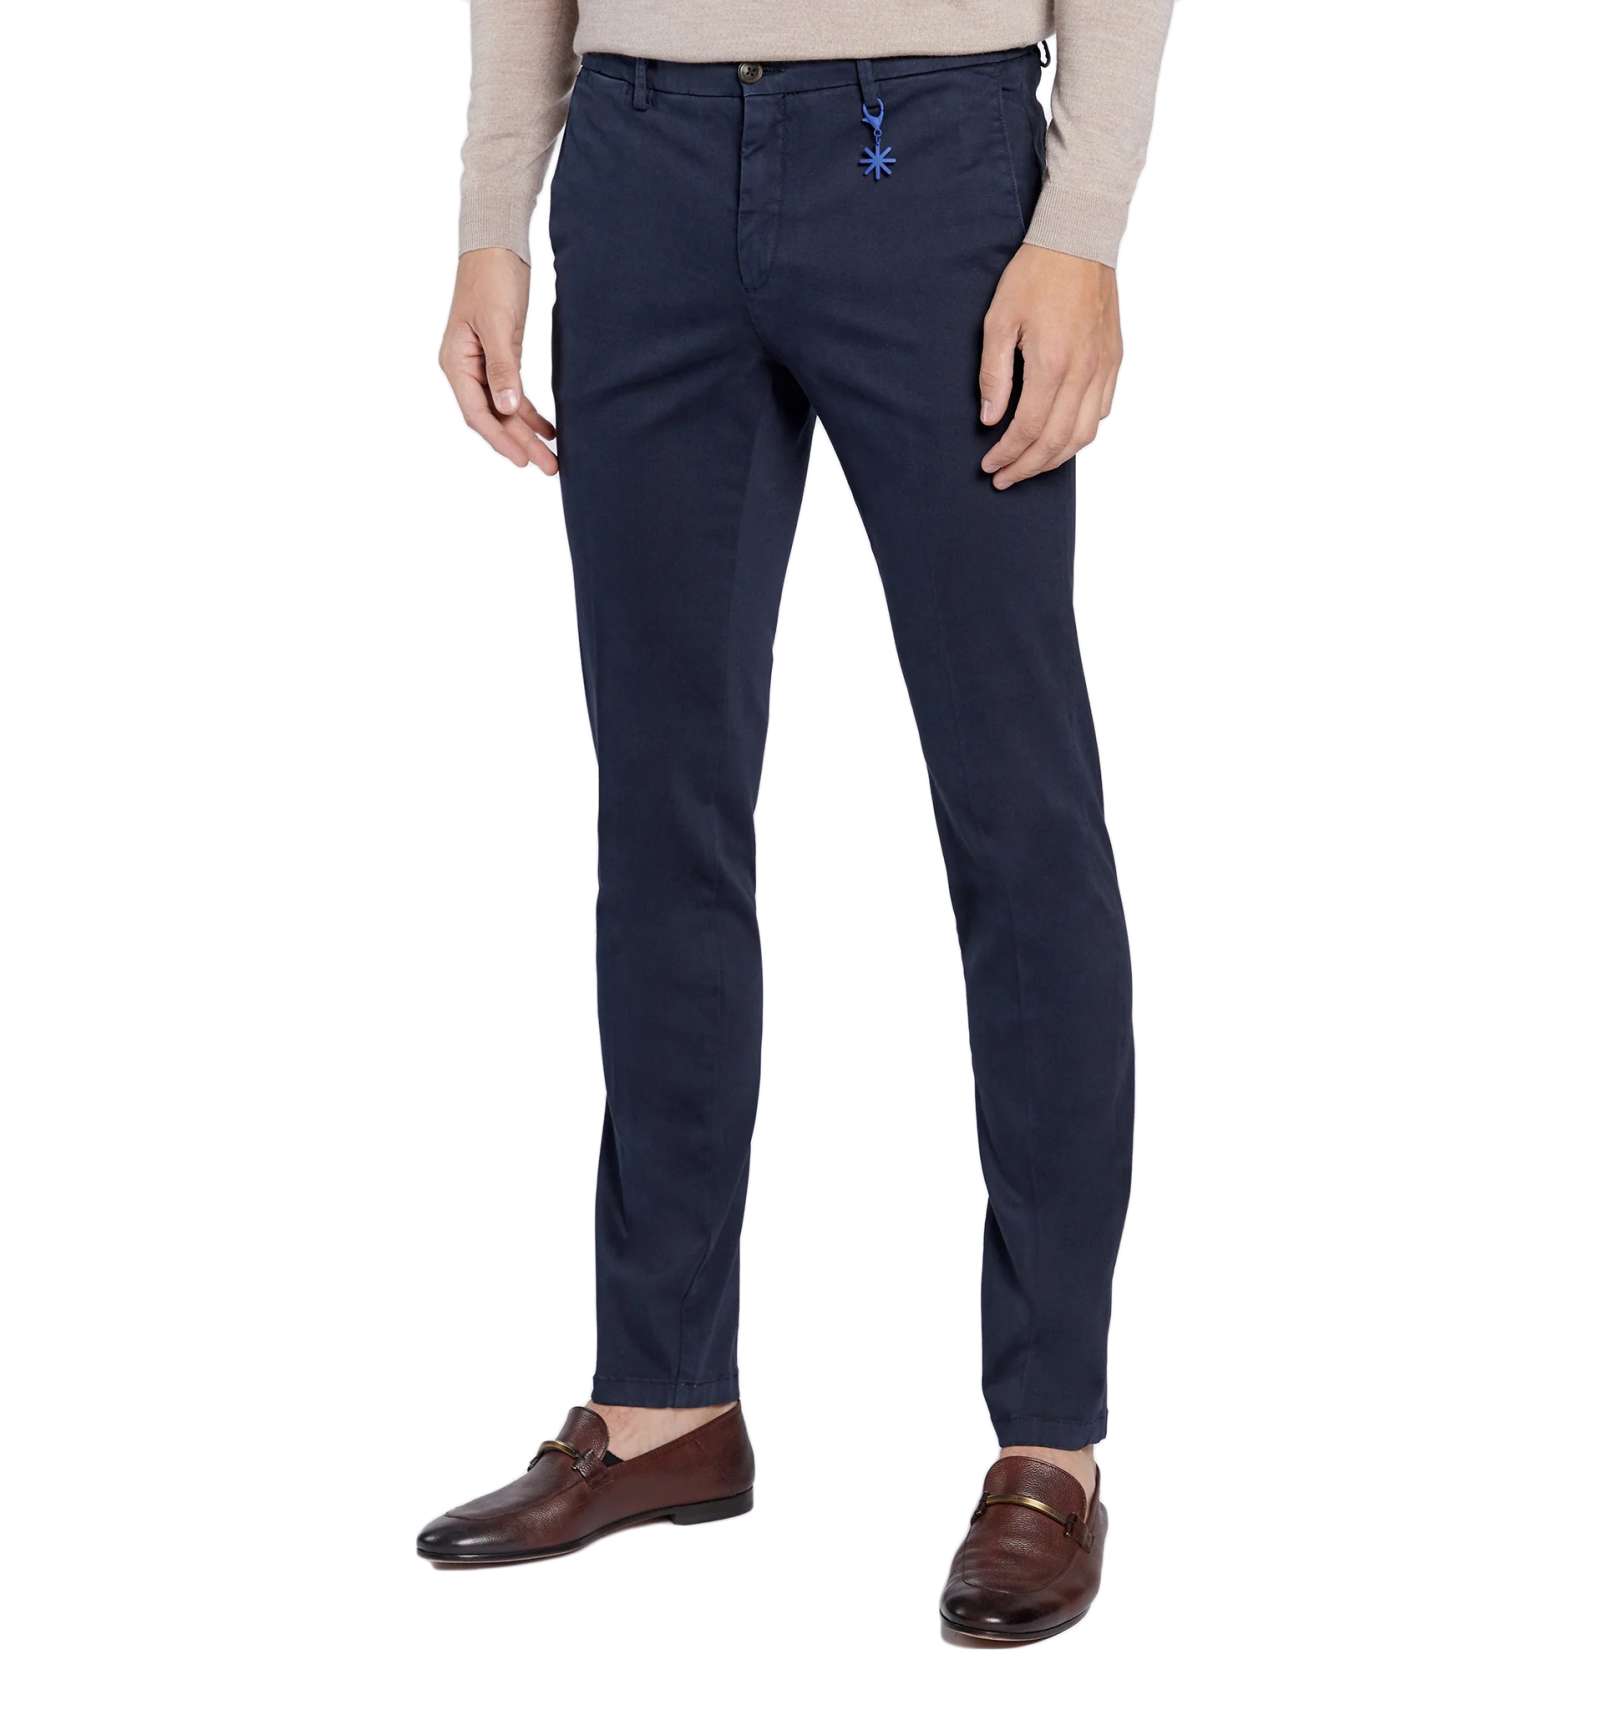 Pantaloni invernali in cotone elasticizzato - blu - MANUEL RITZ